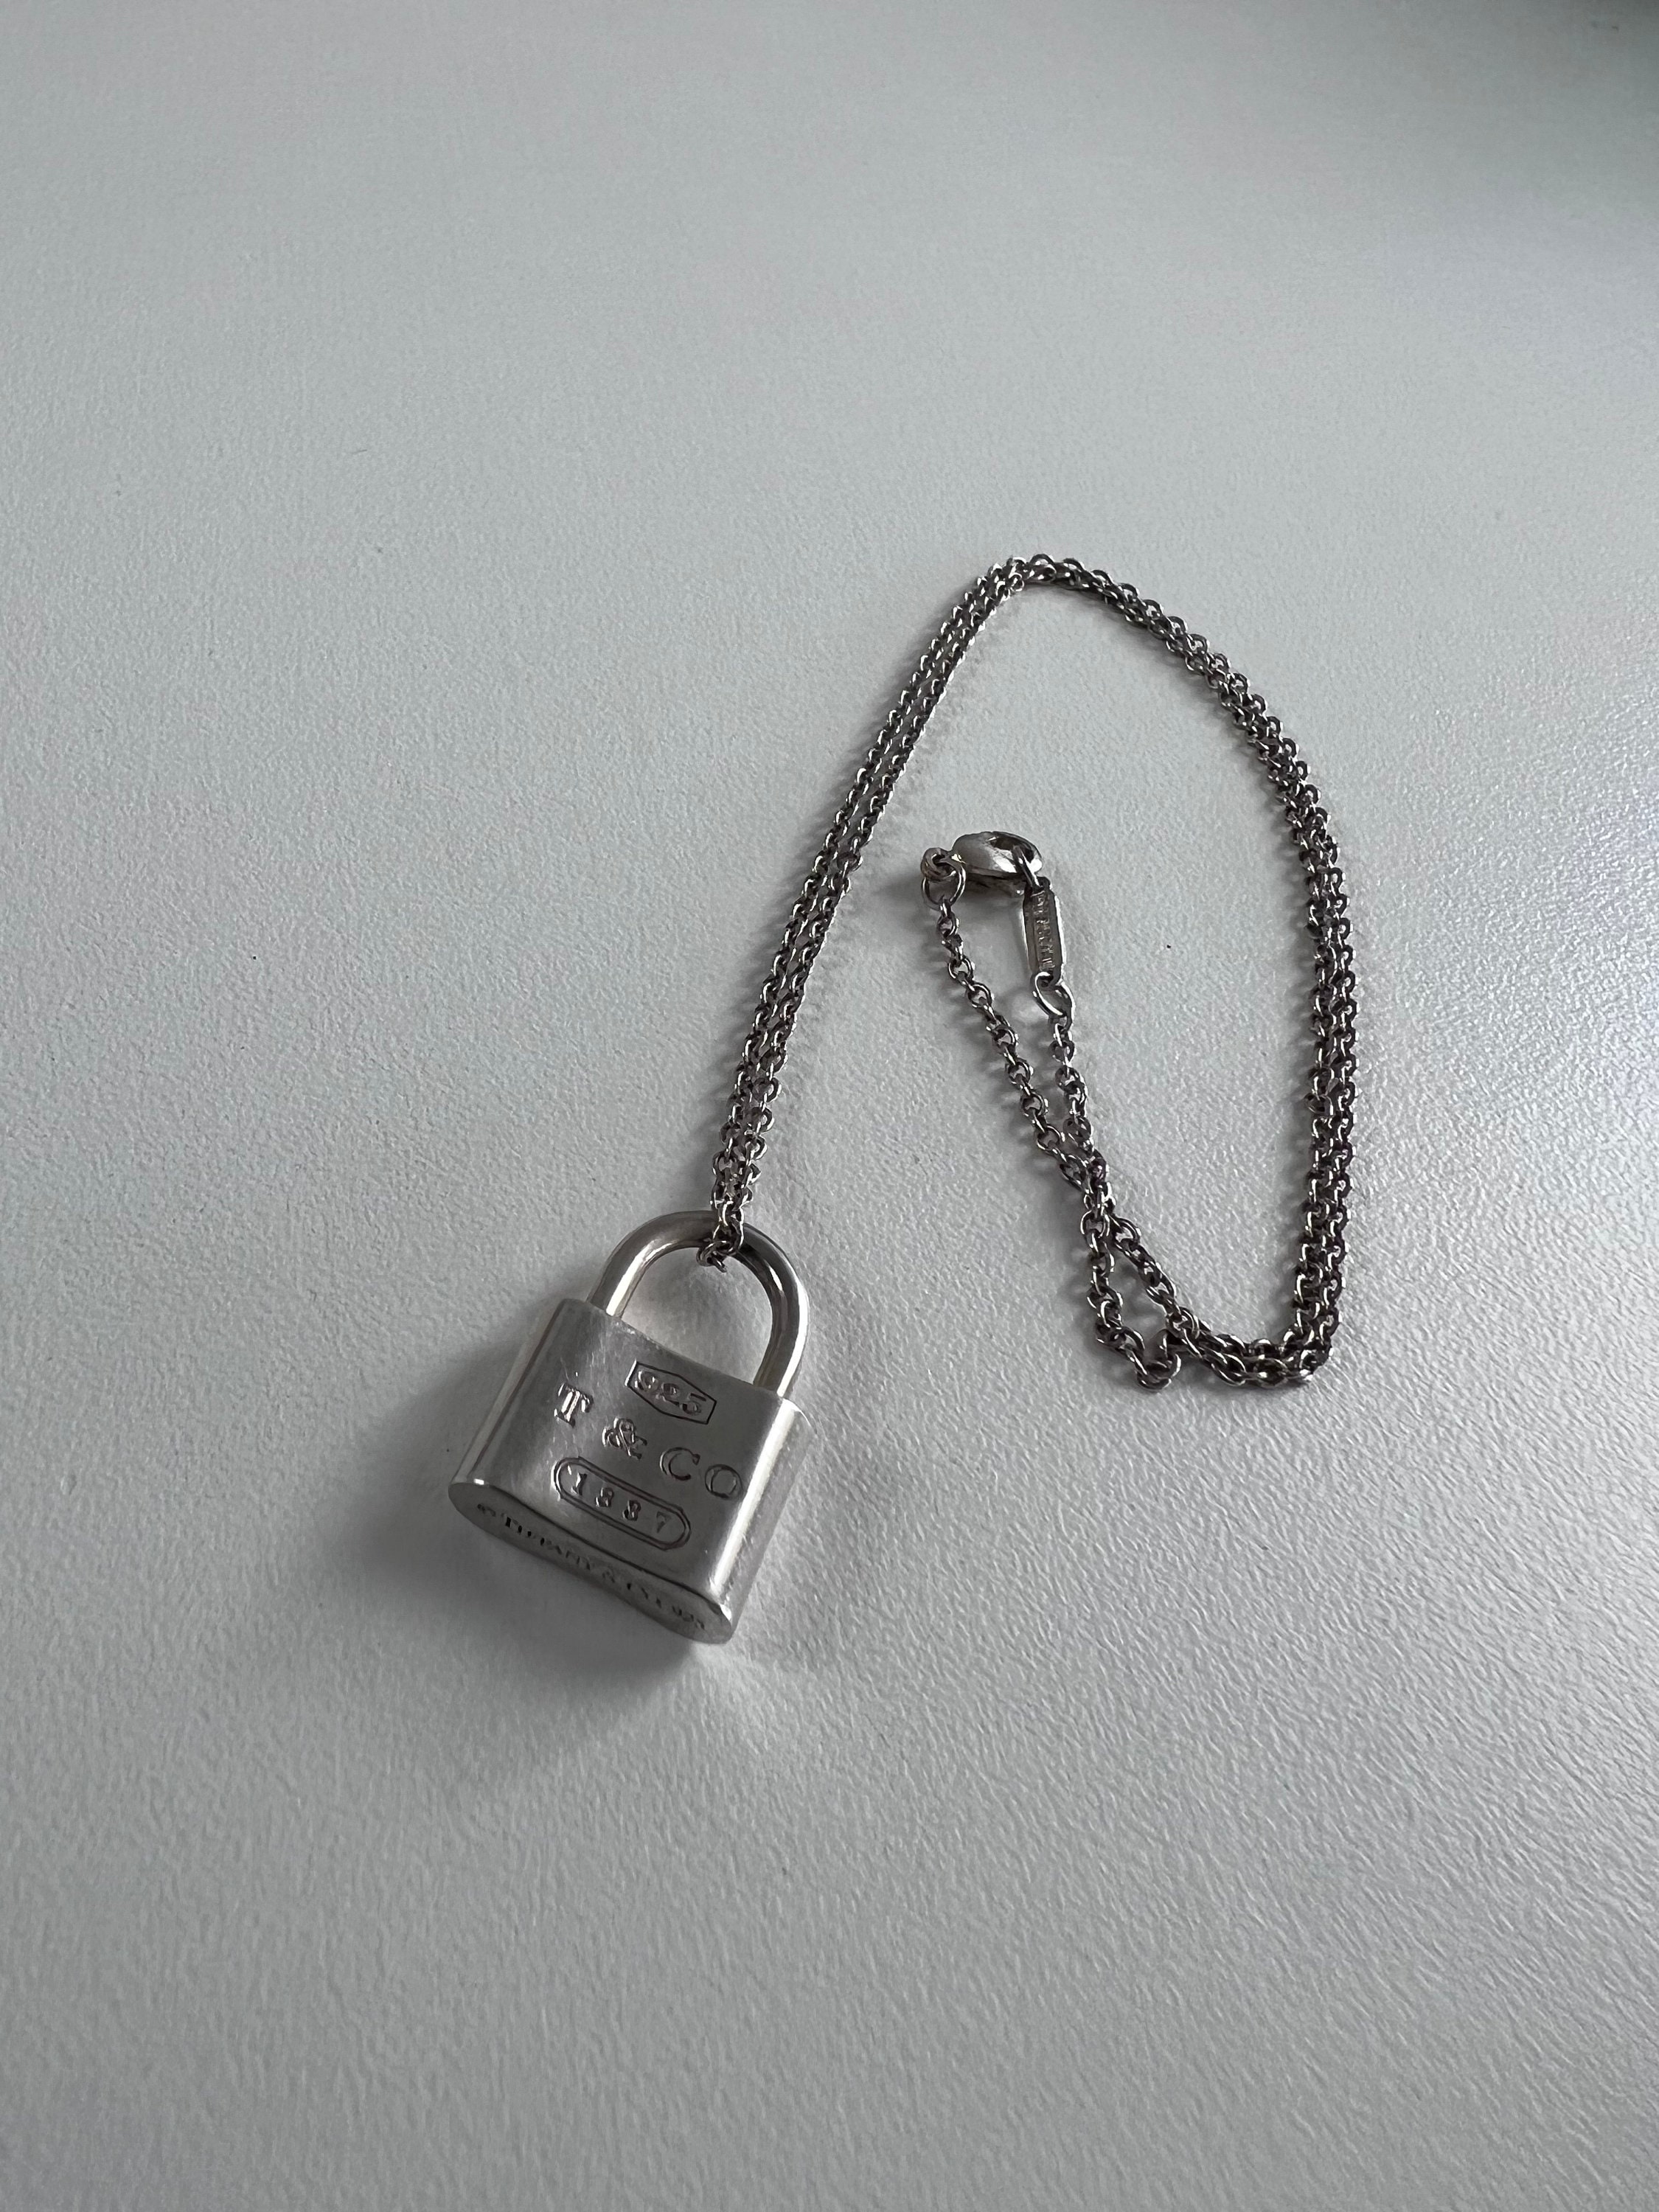 Preloved Tiffany & Co. 1837 Diamond Mini Round Lock Pendant Necklace Silver  16”